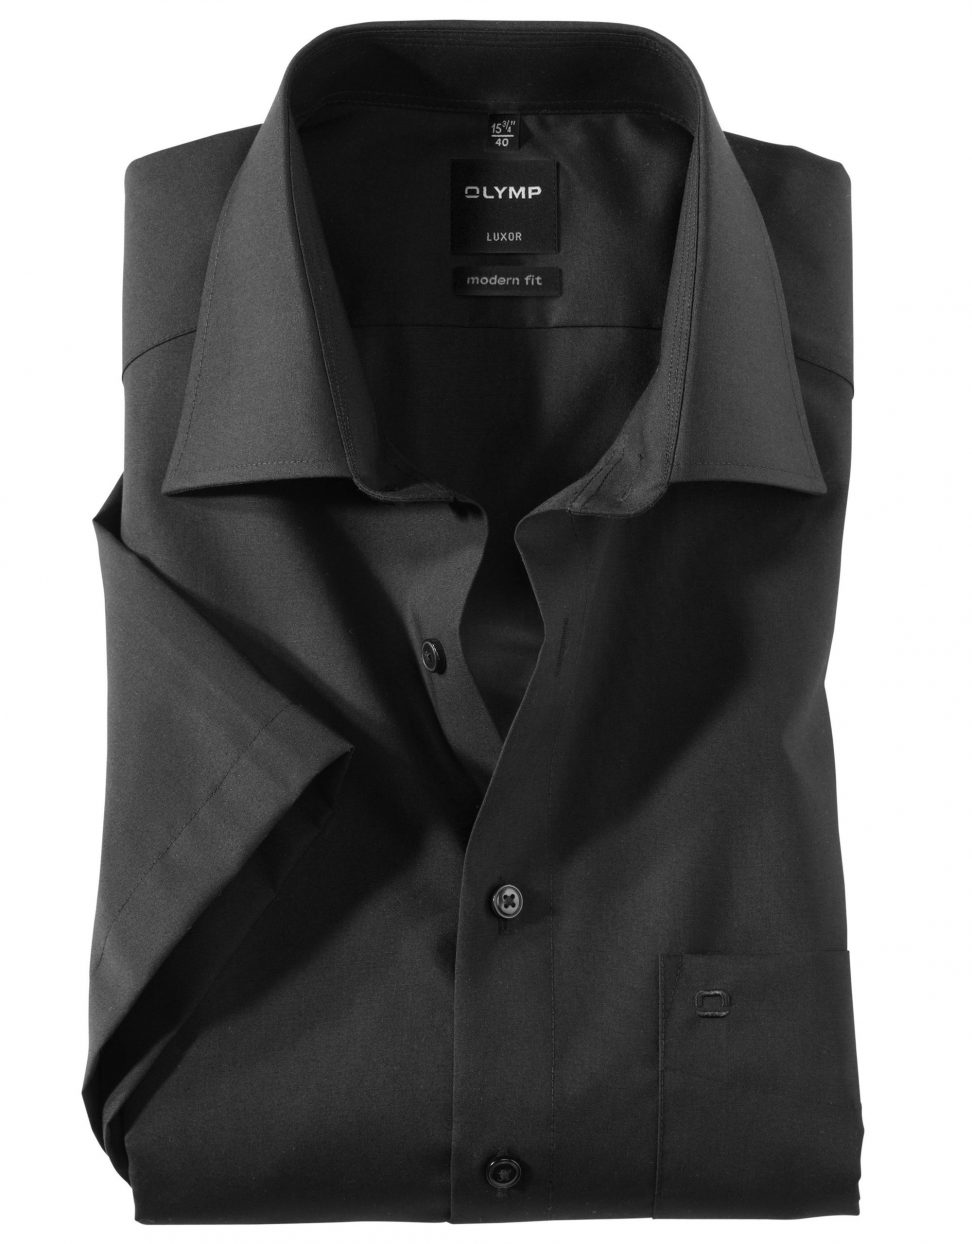 Koszula OLYMP Luxor, modern fit, krótki rękaw,czarna/ 03001268